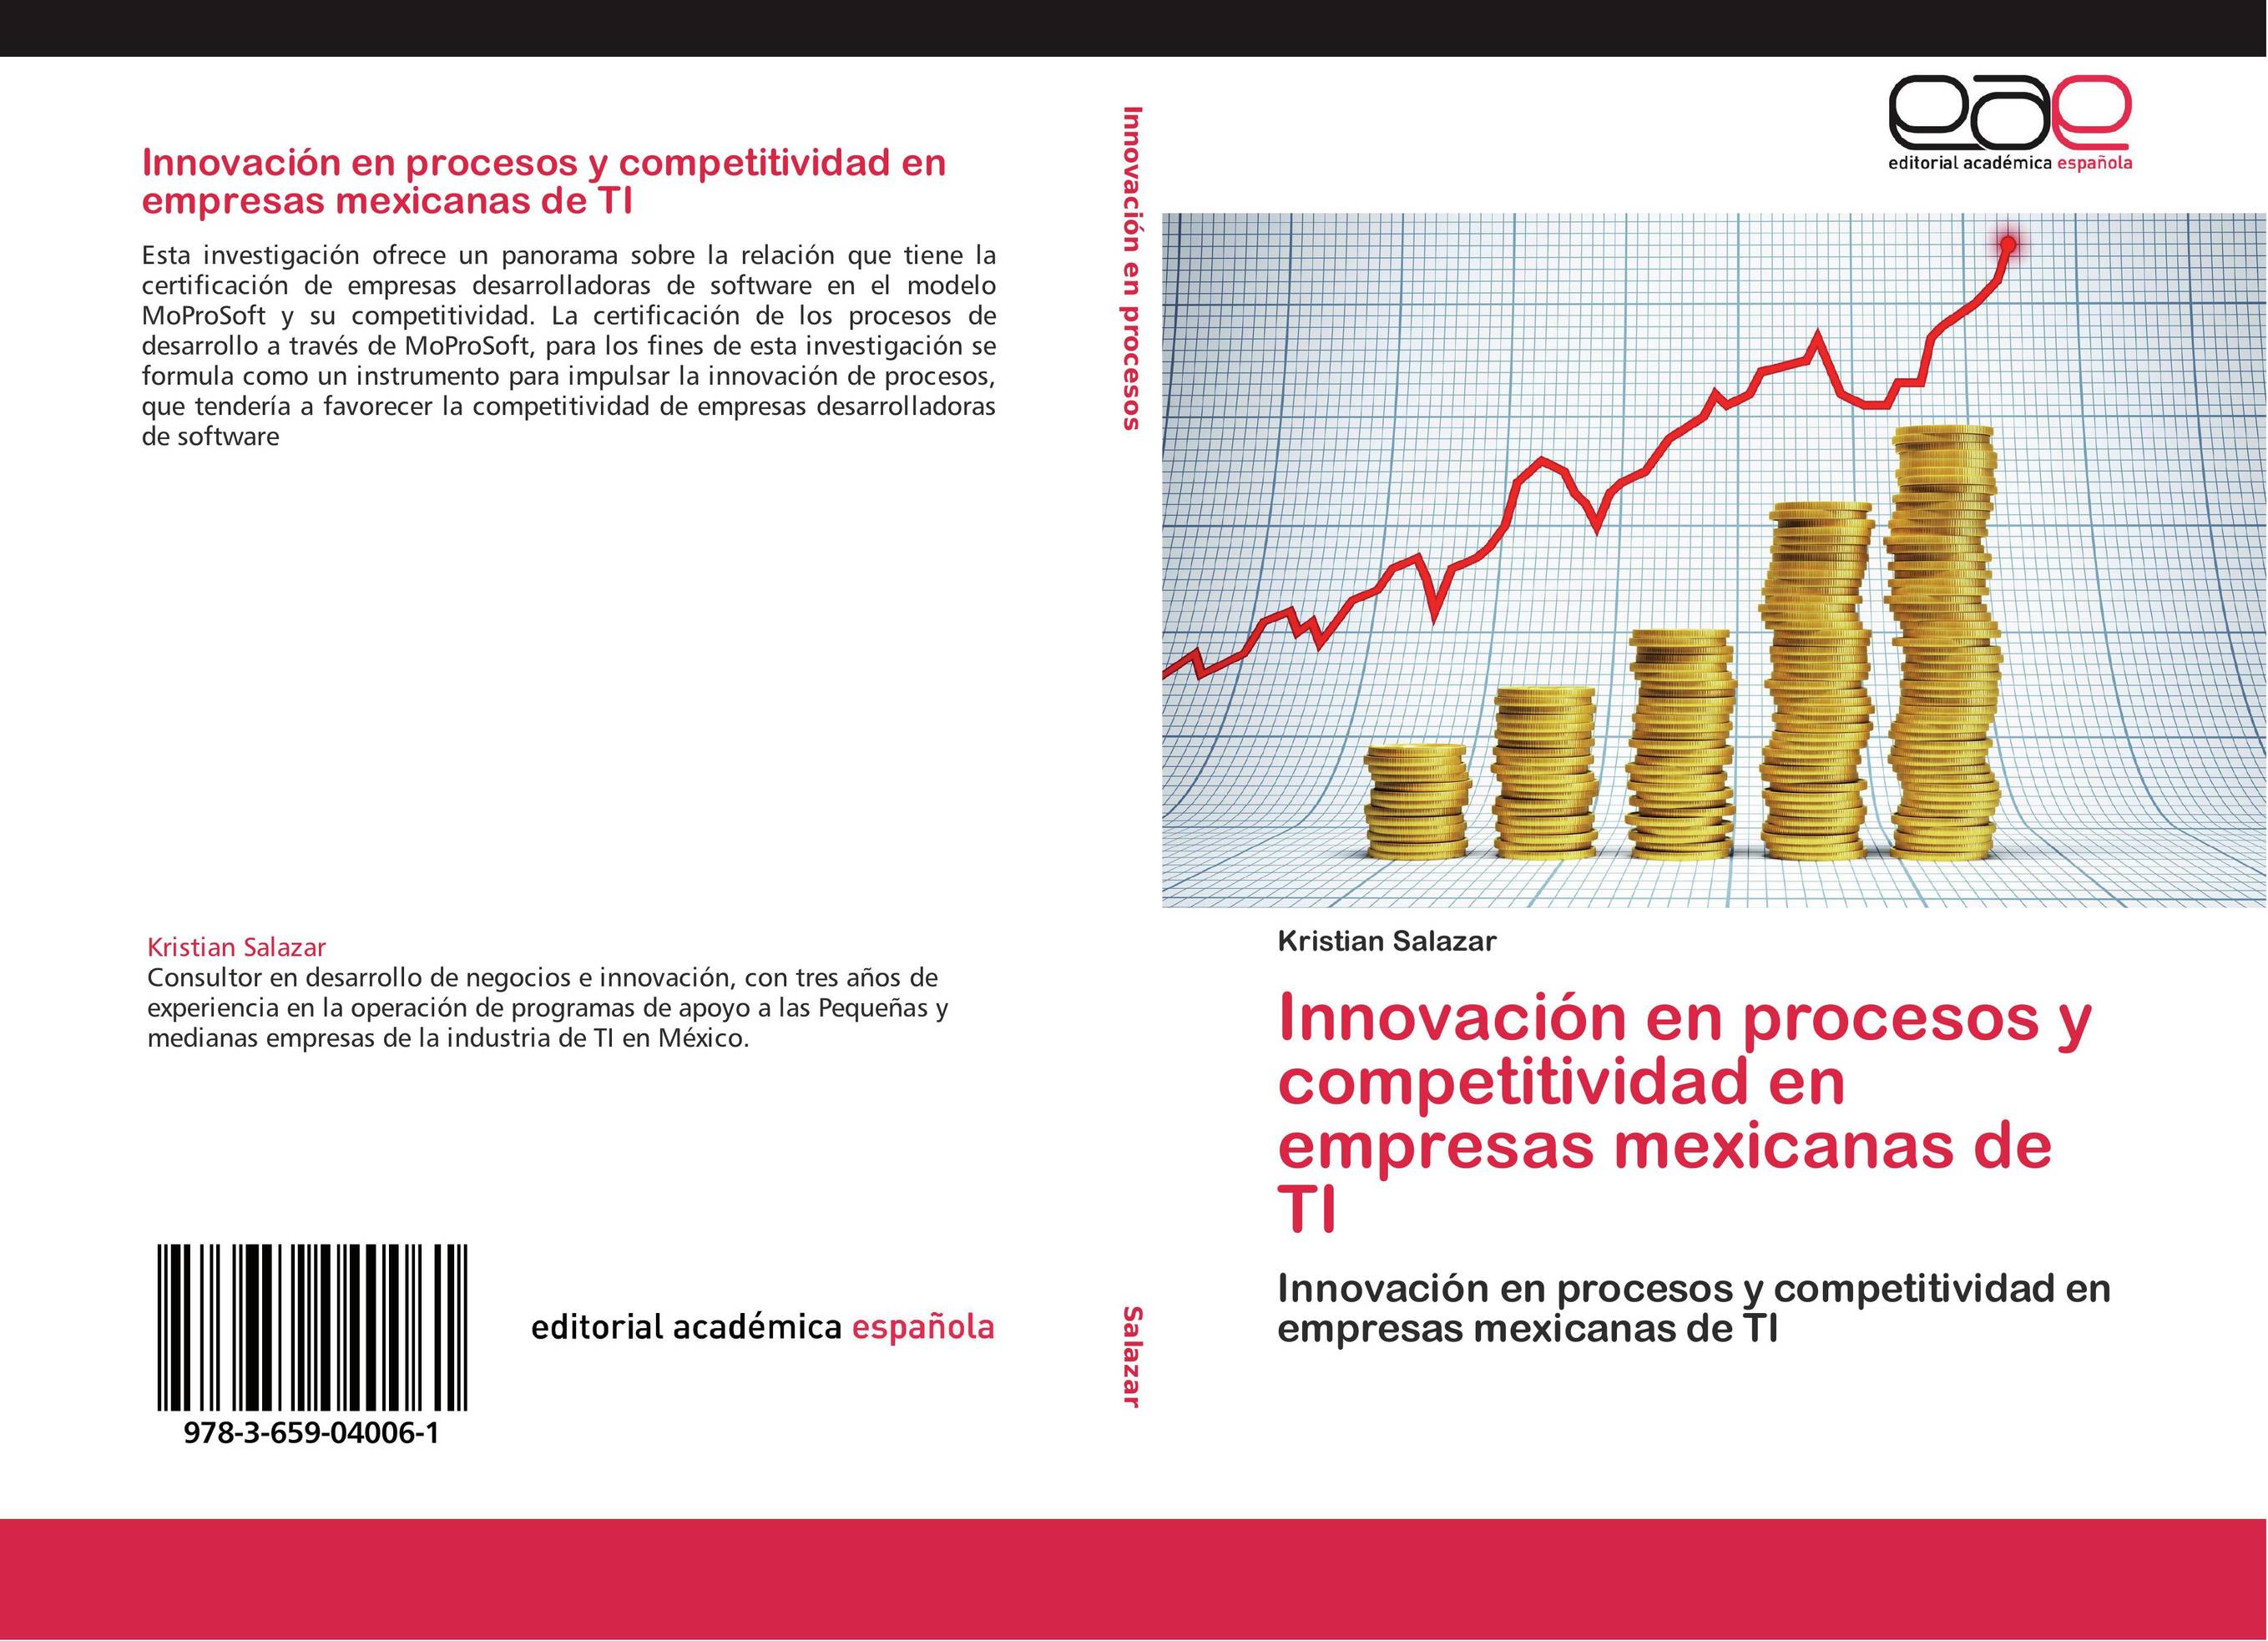 Innovación en procesos y competitividad en empresas mexicanas de TI